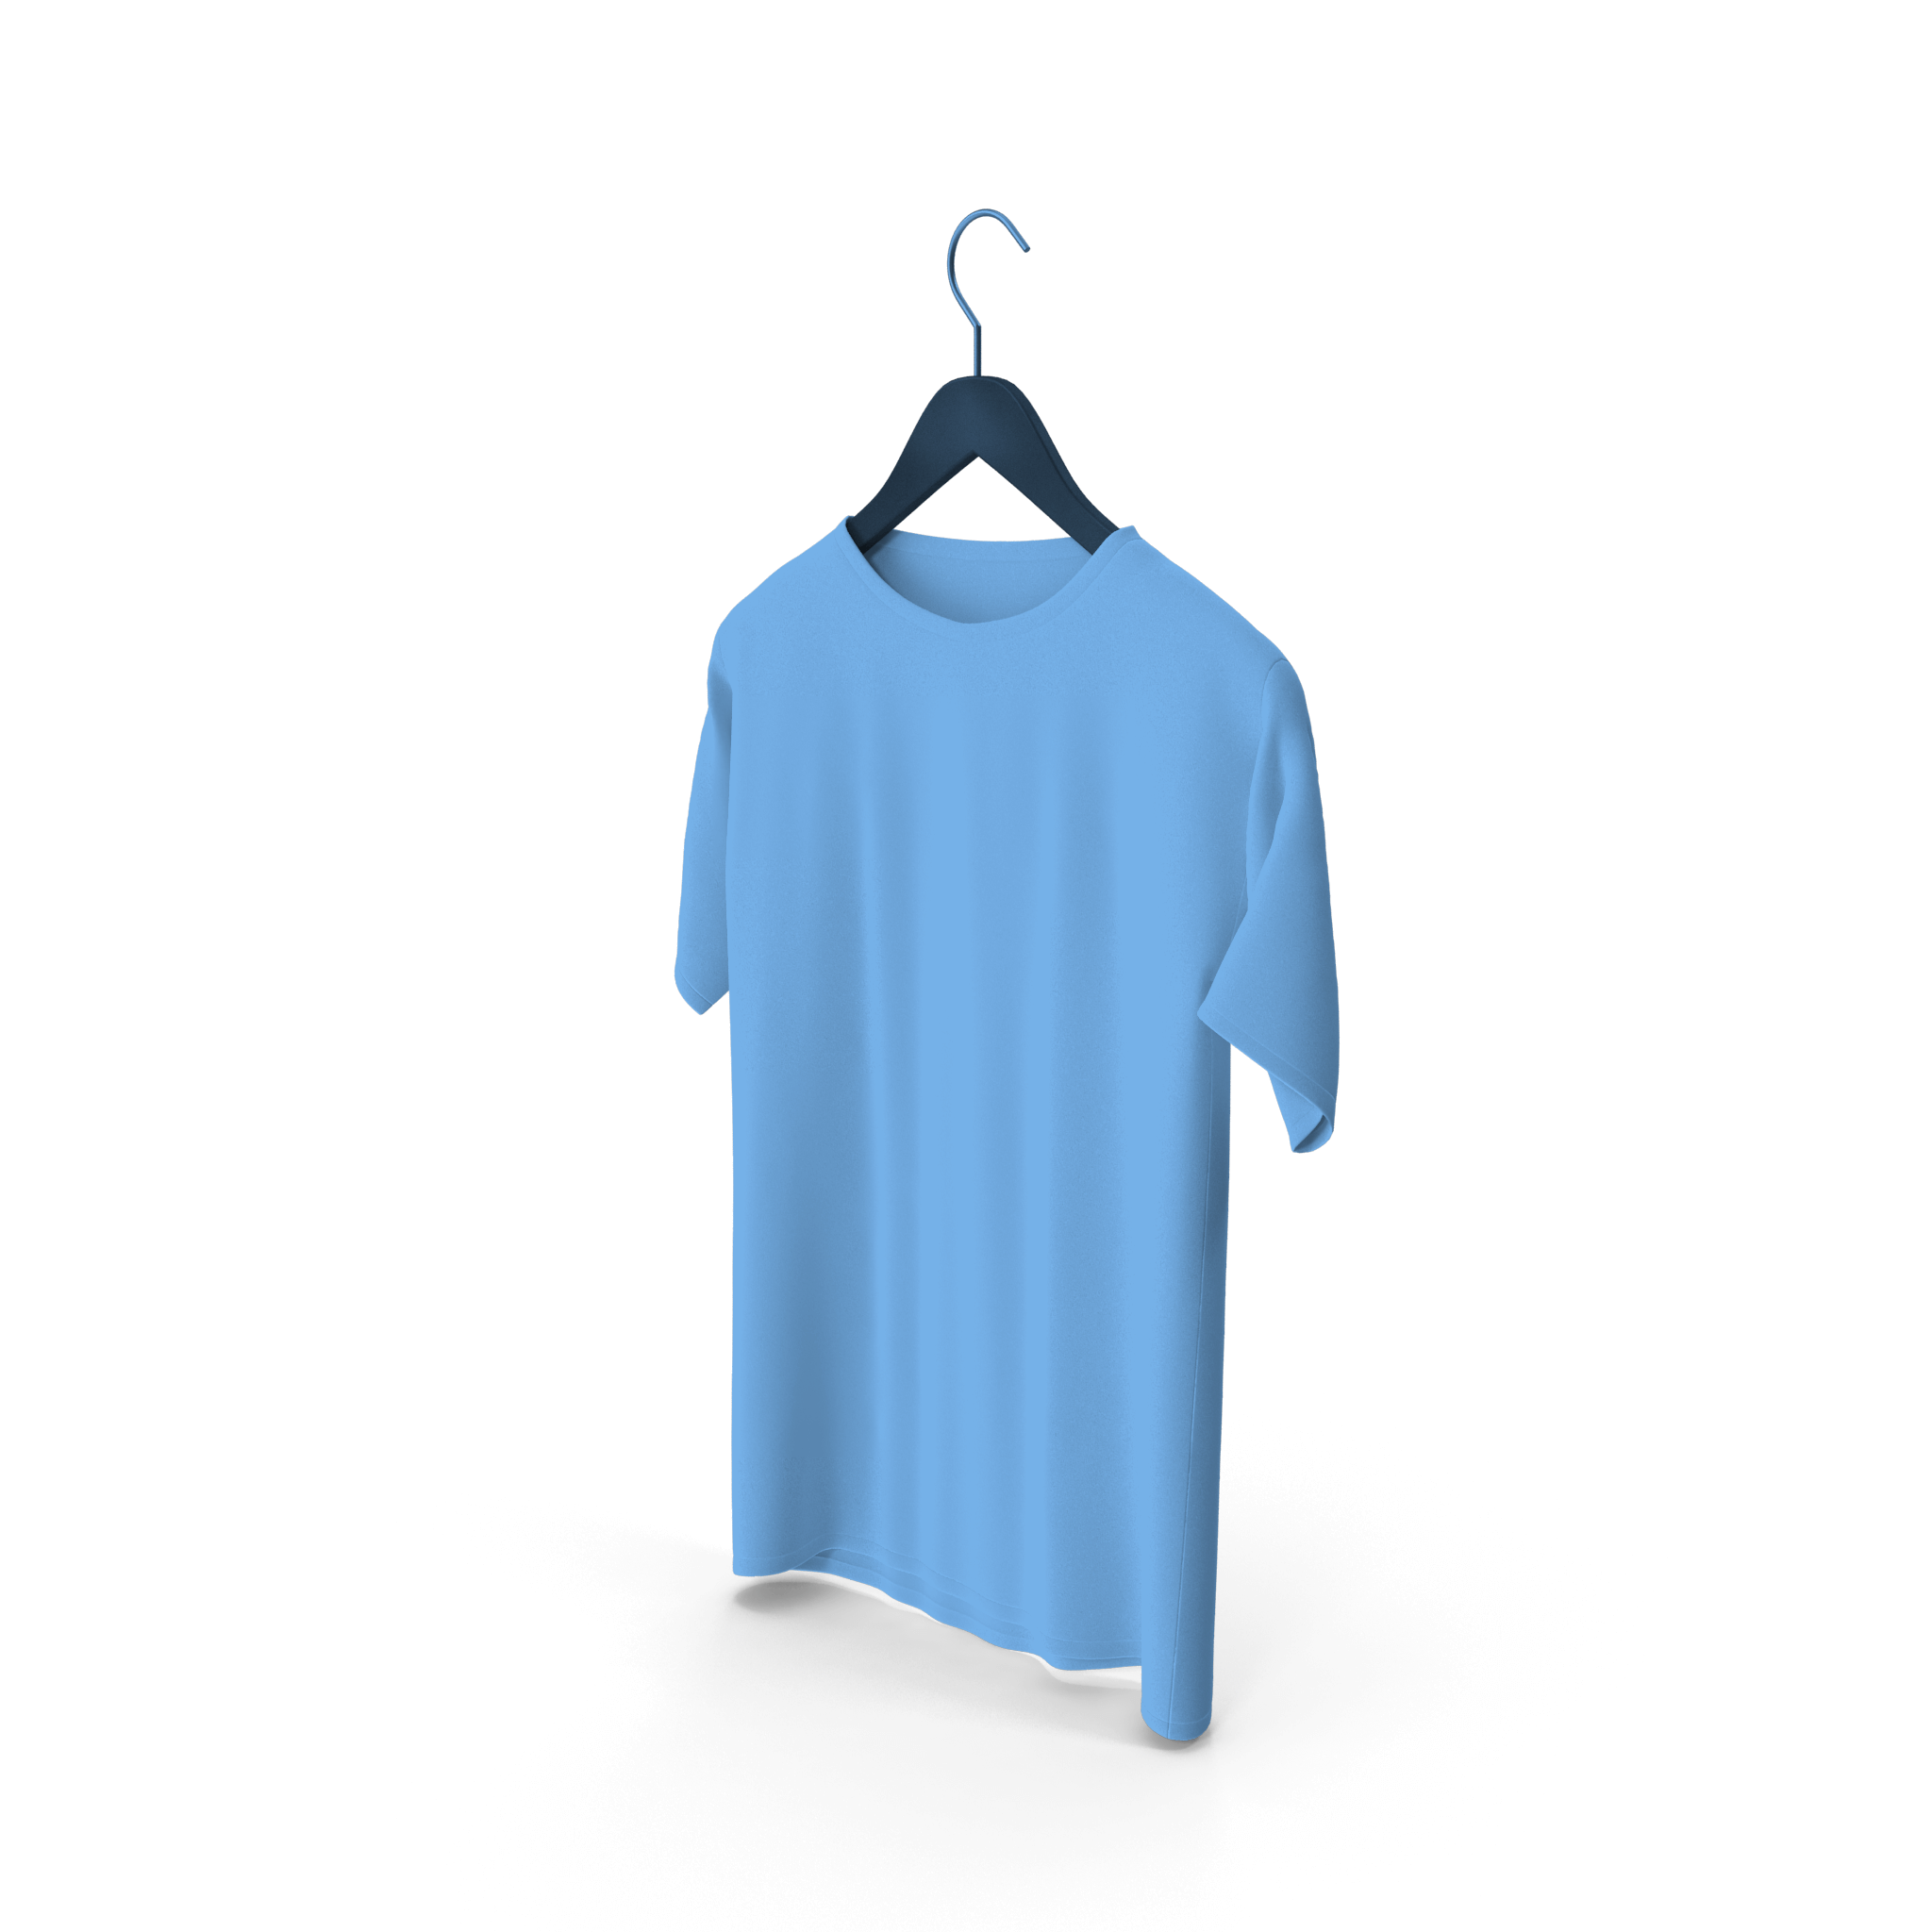 Camiseta-AzulClara